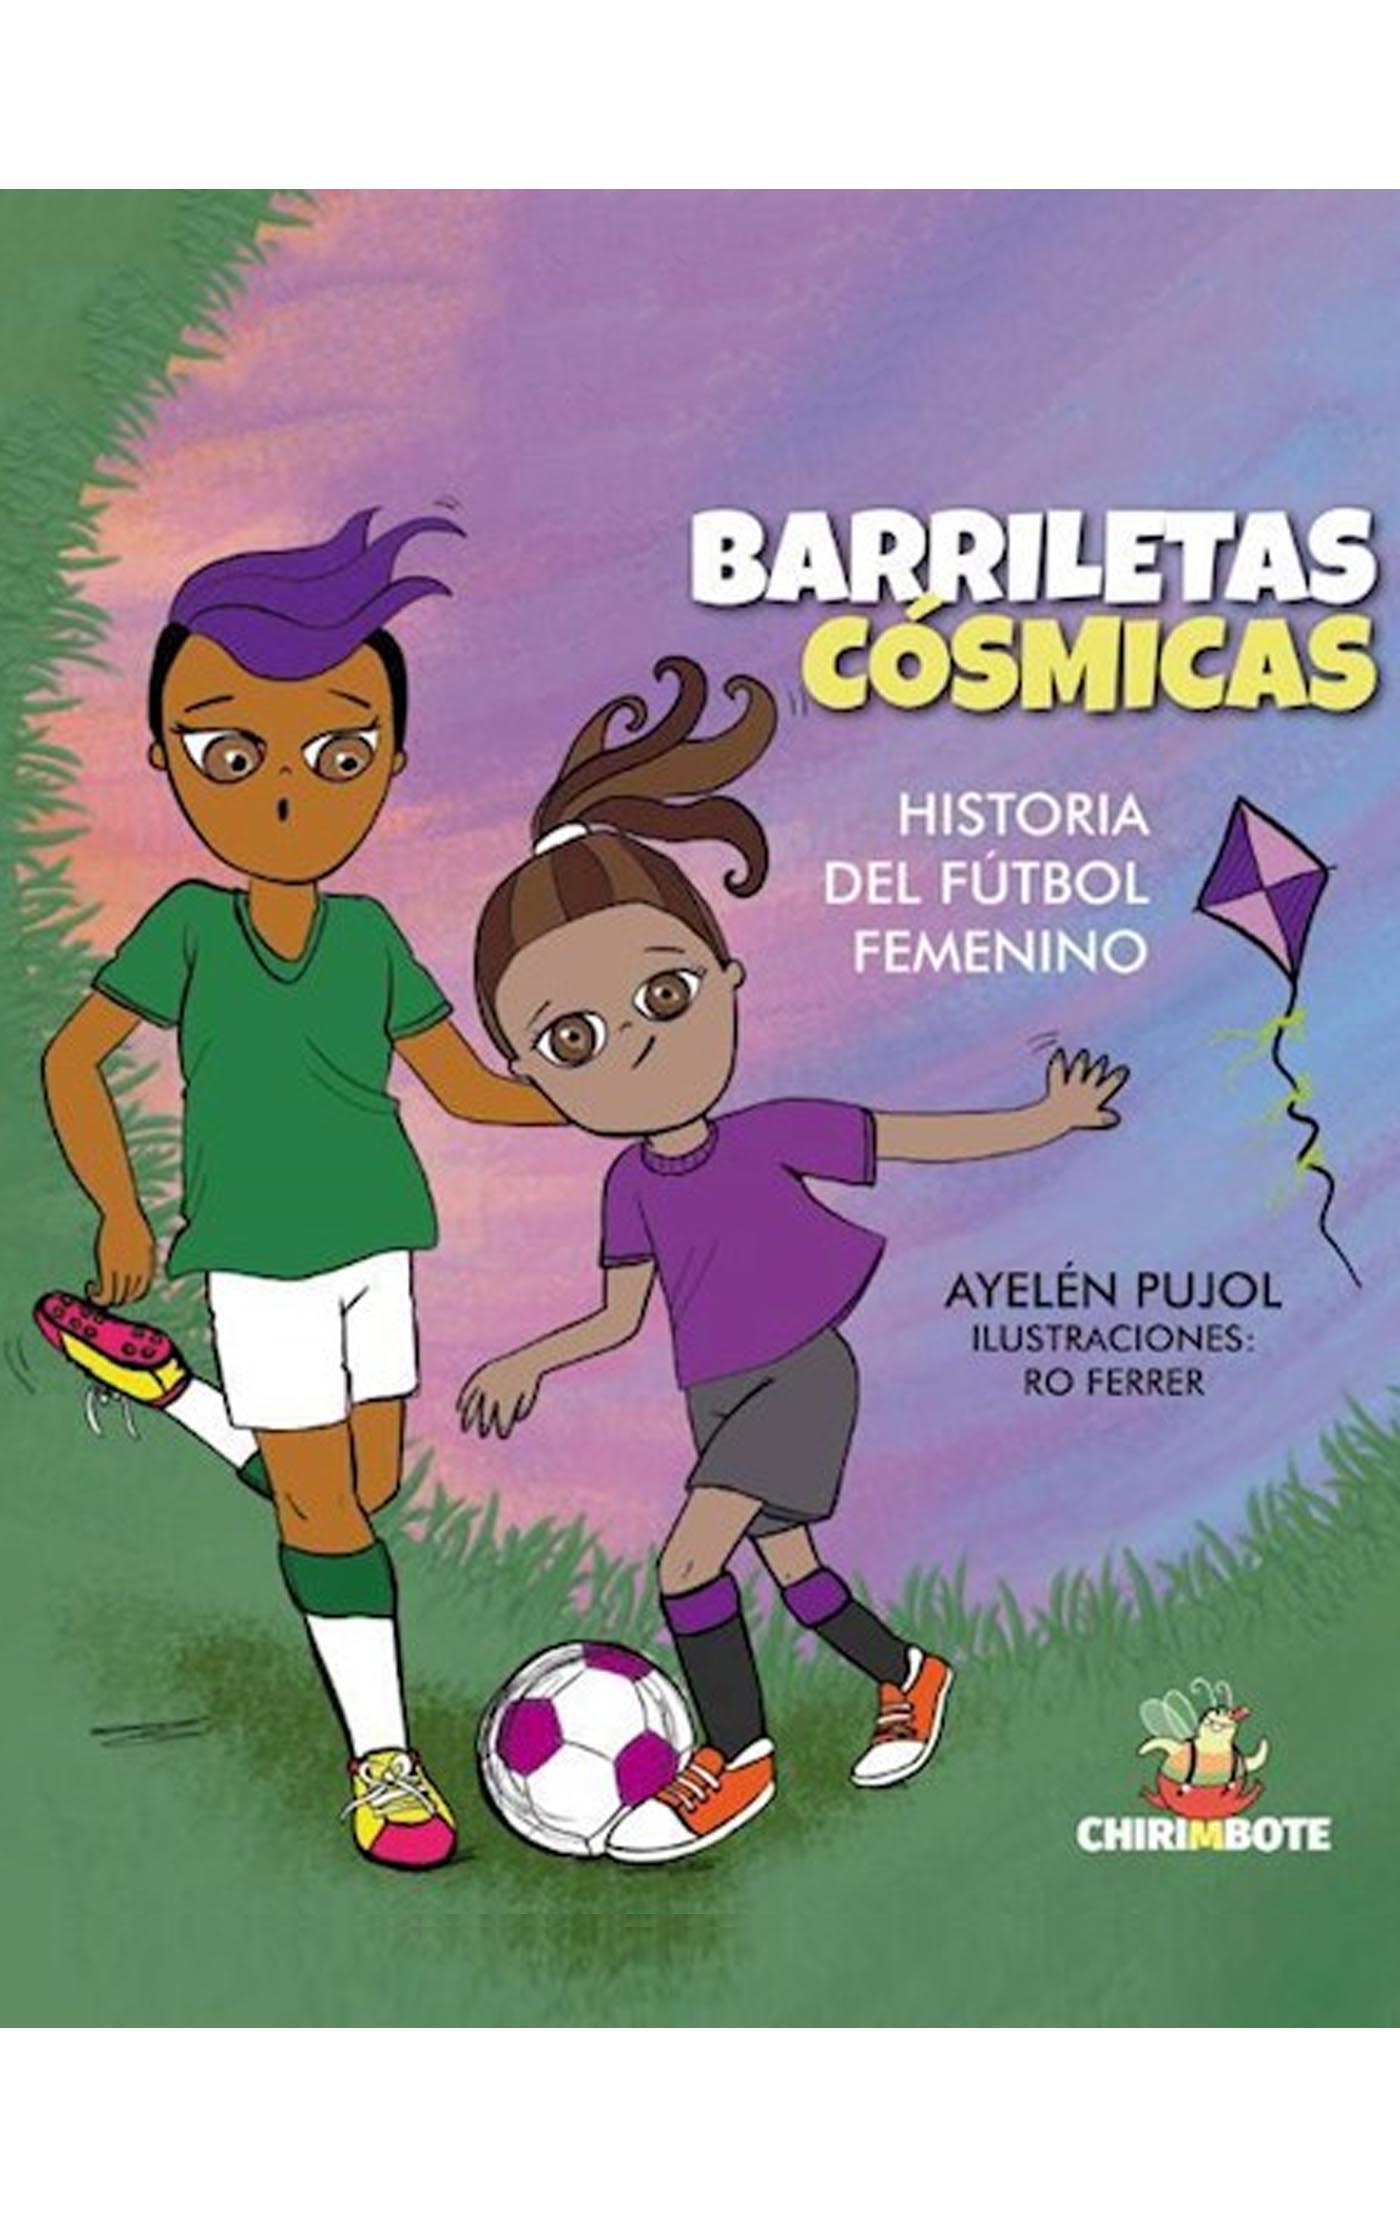 Barriletas cósmicas historia del fútbol femenino